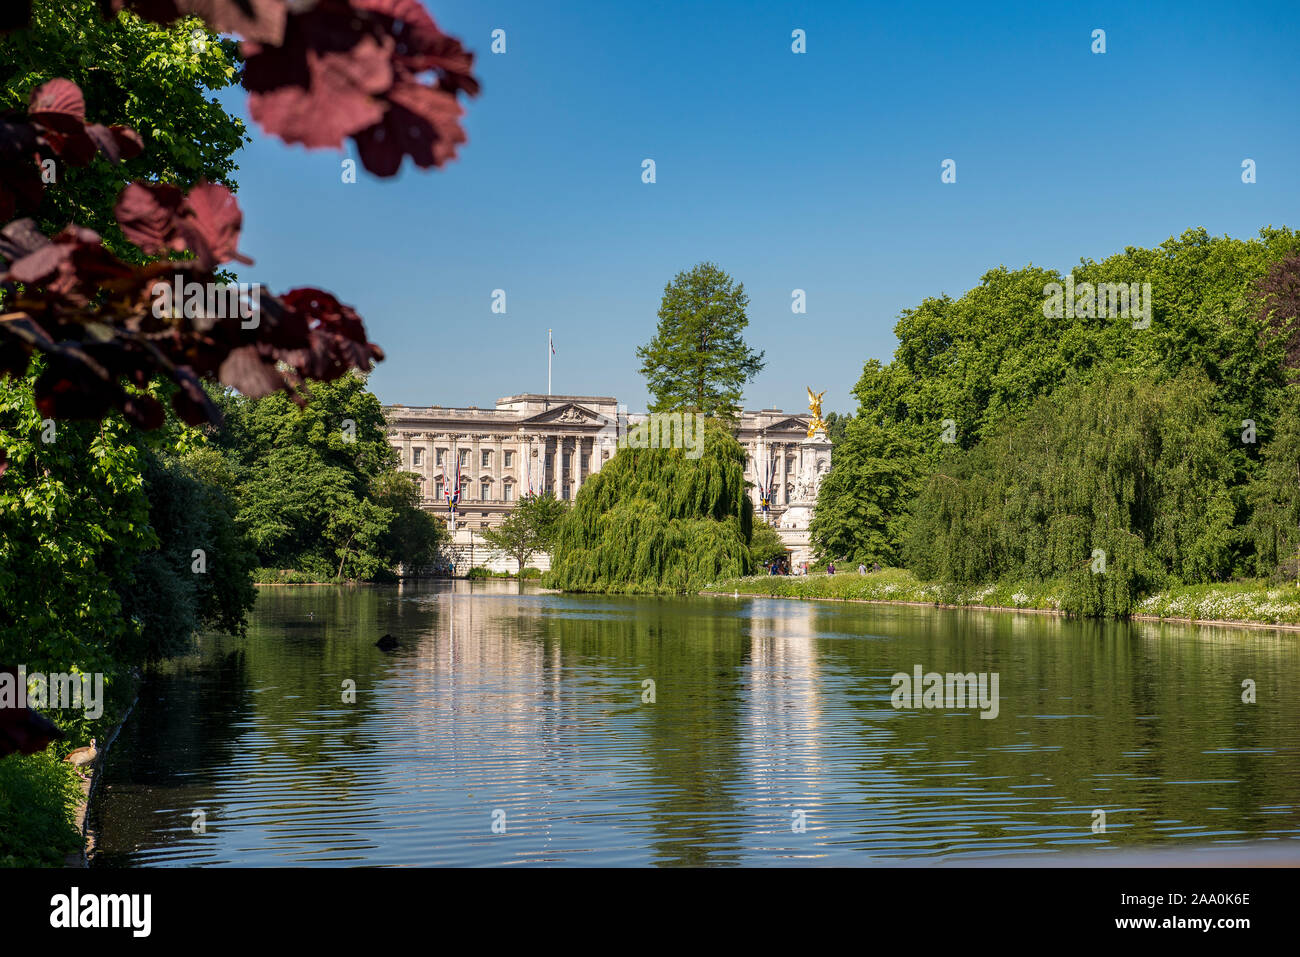 La Reina de Inglaterra residencia Buckingham Palace exterior de St James Park en verano, estanque y árboles verdes en primer plano en un día soleado claro Foto de stock